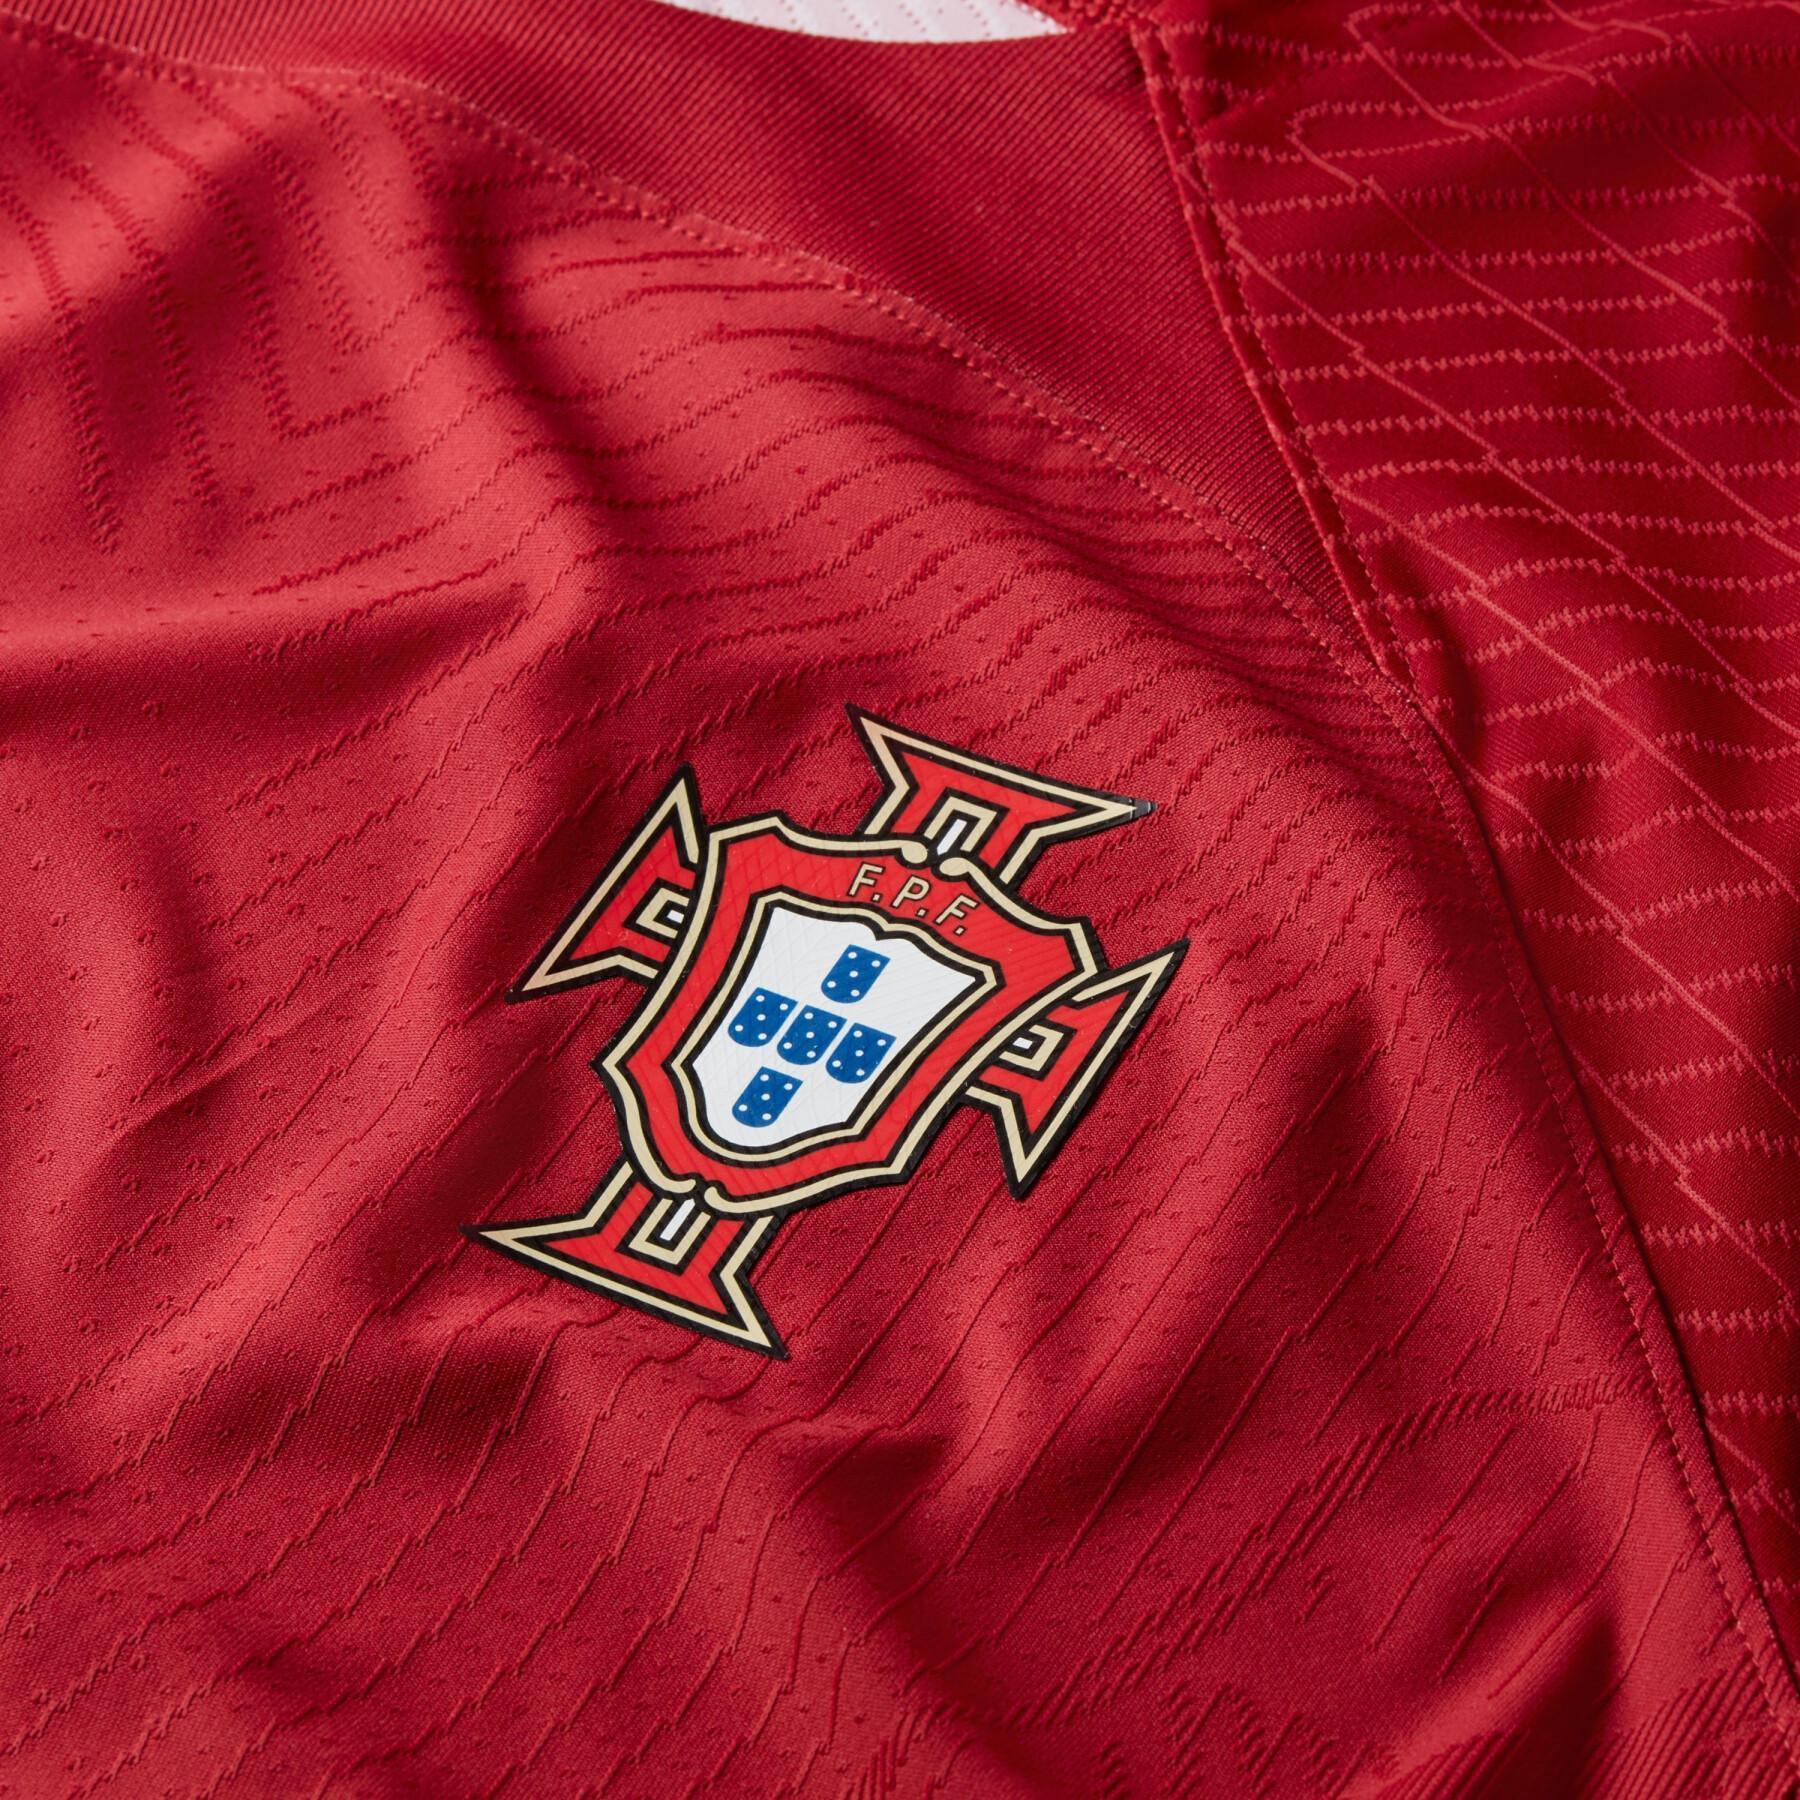 Authentiek 2022 WK thuisshirt Portugal